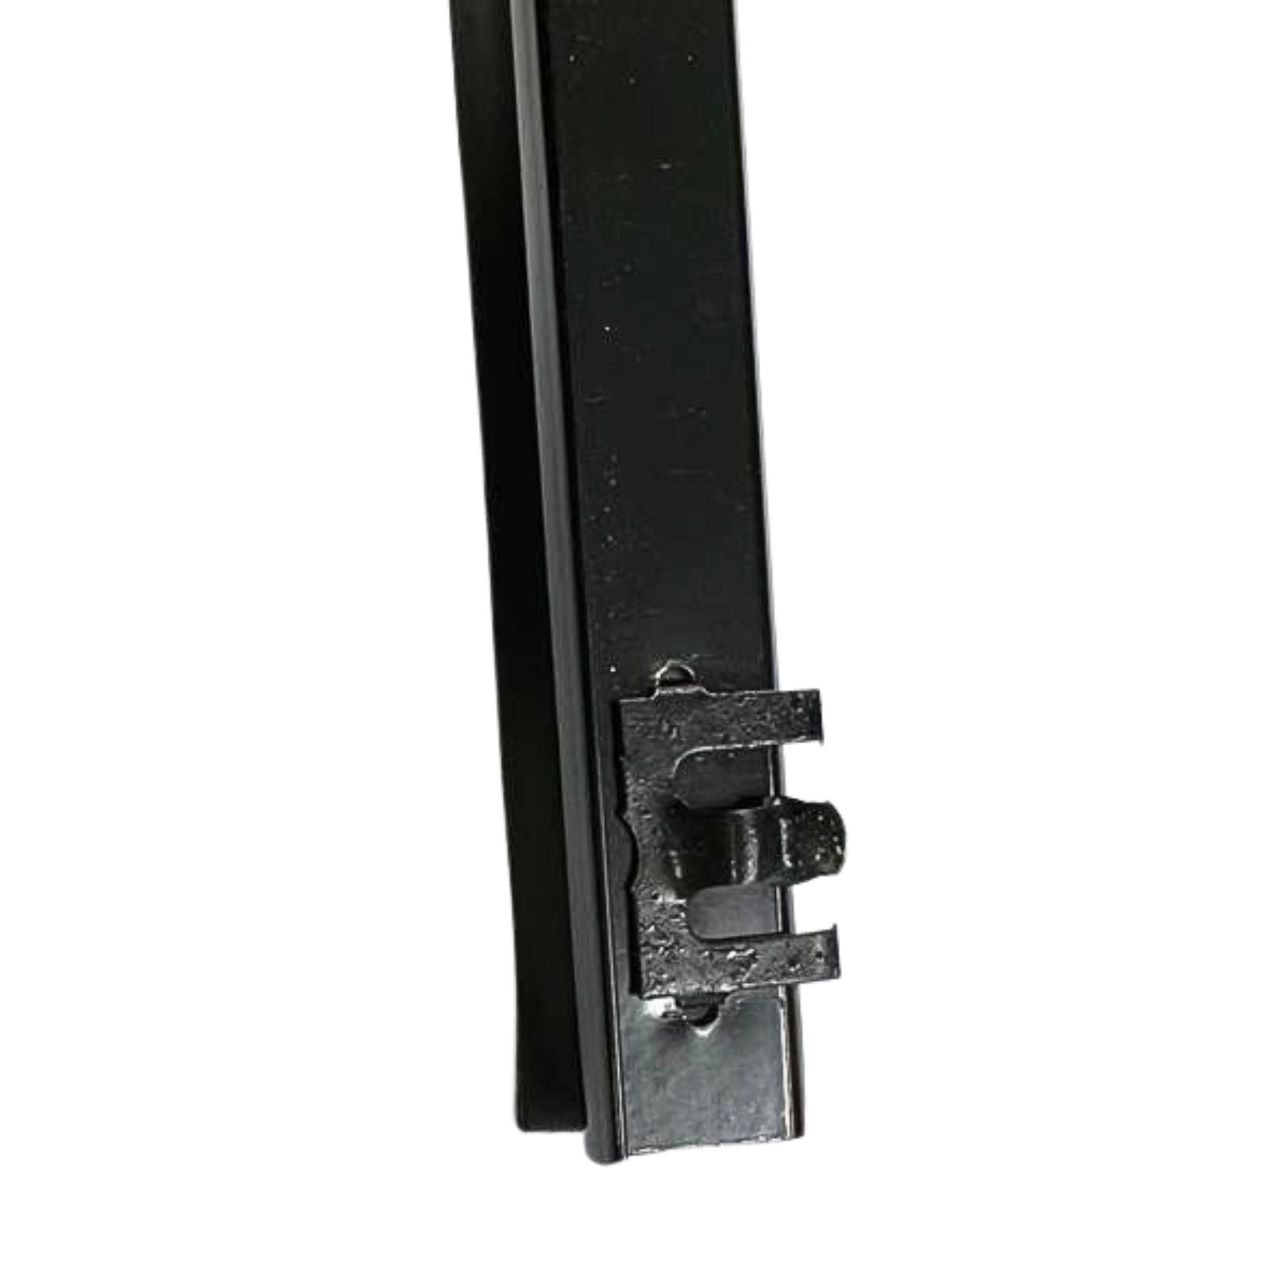 610/180B Coupe SSS Outer door belt seals rear LH & RH (2) seals